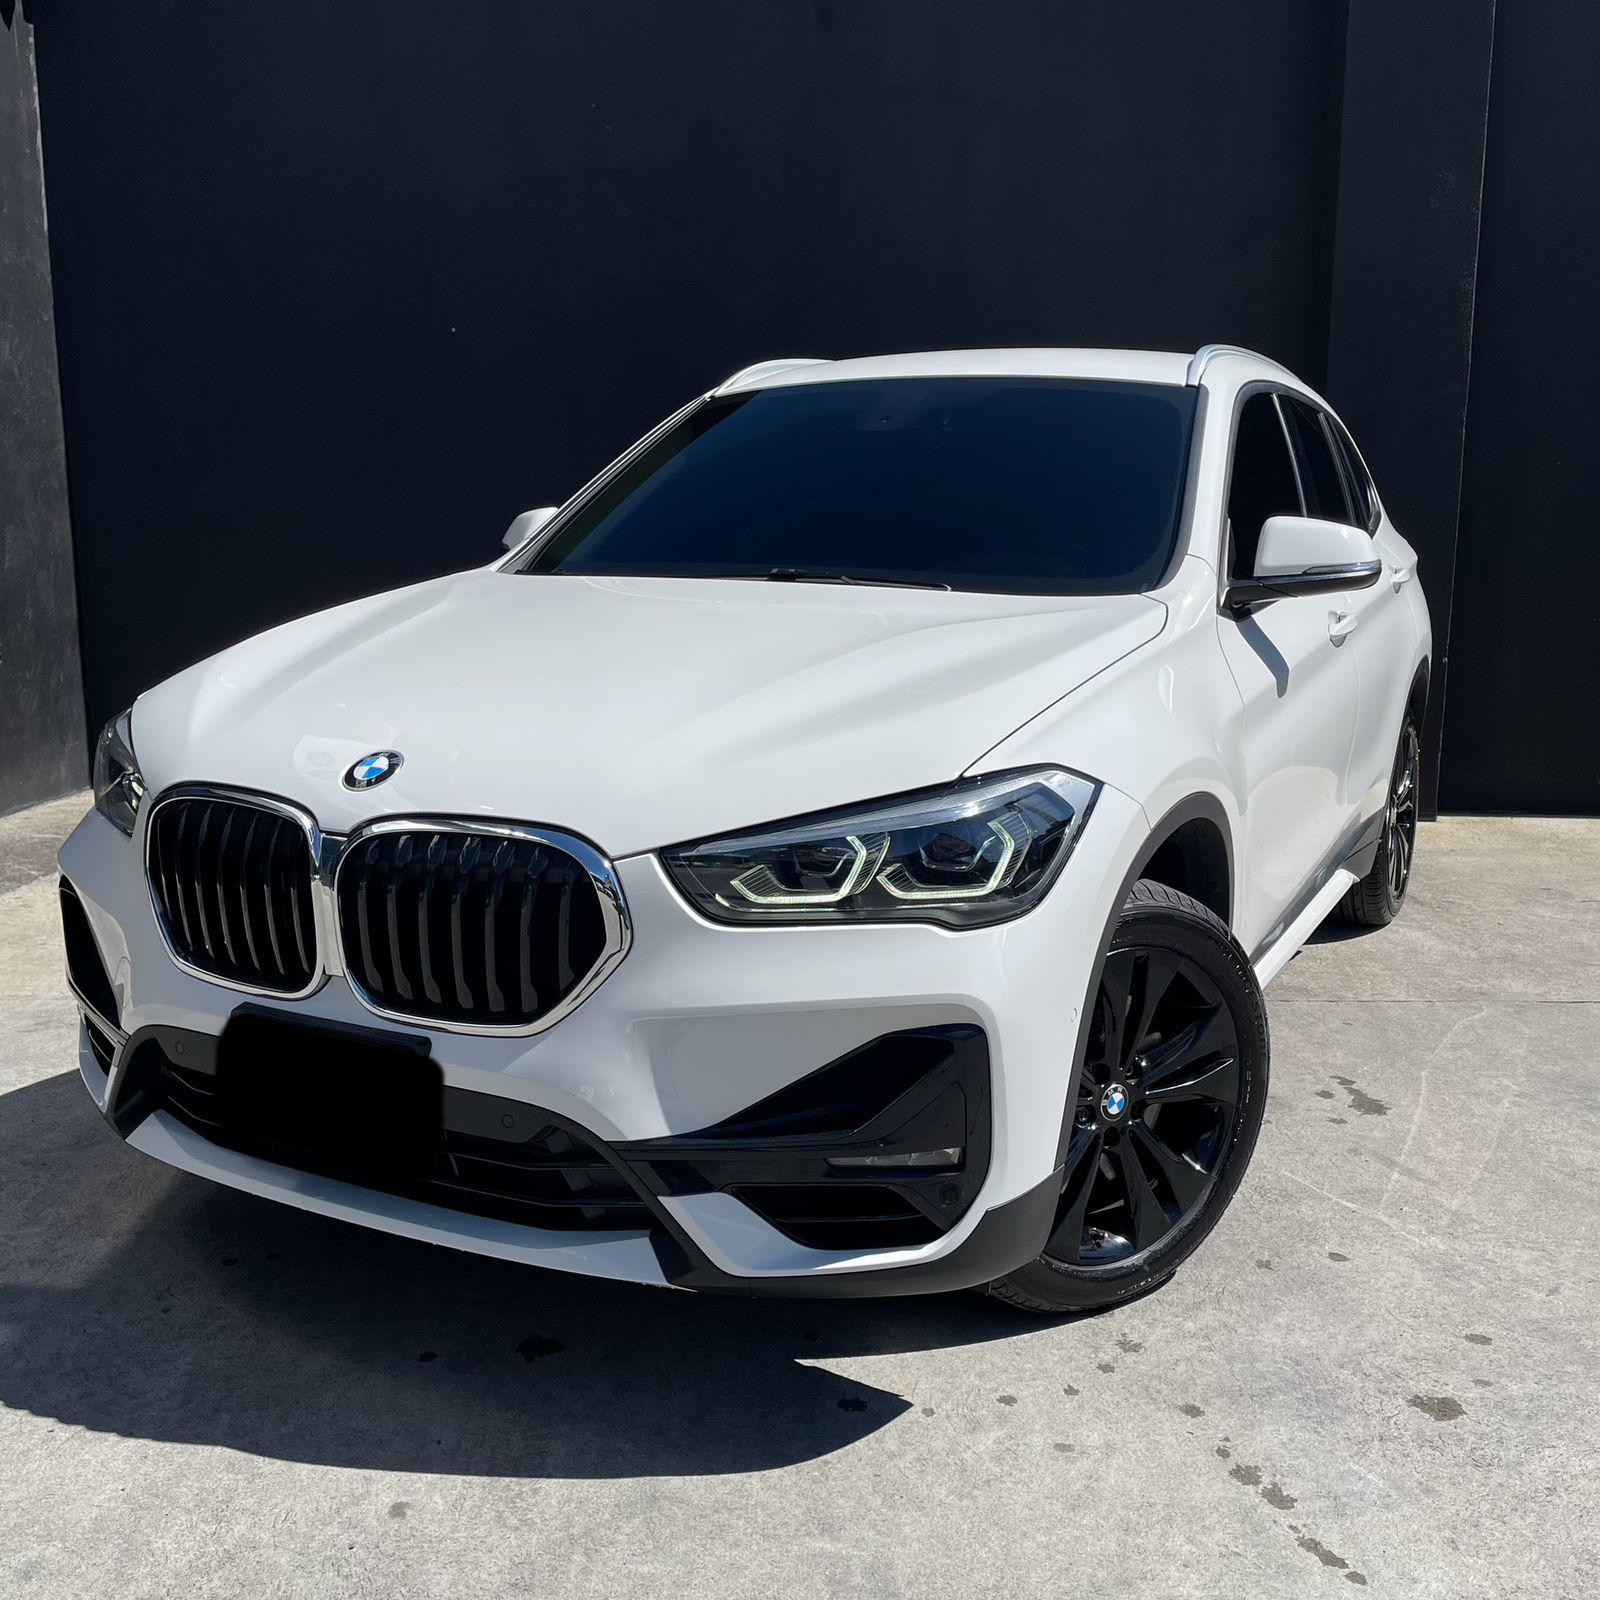 BMW X1, espíritu intrépido – BMW Auto Munich